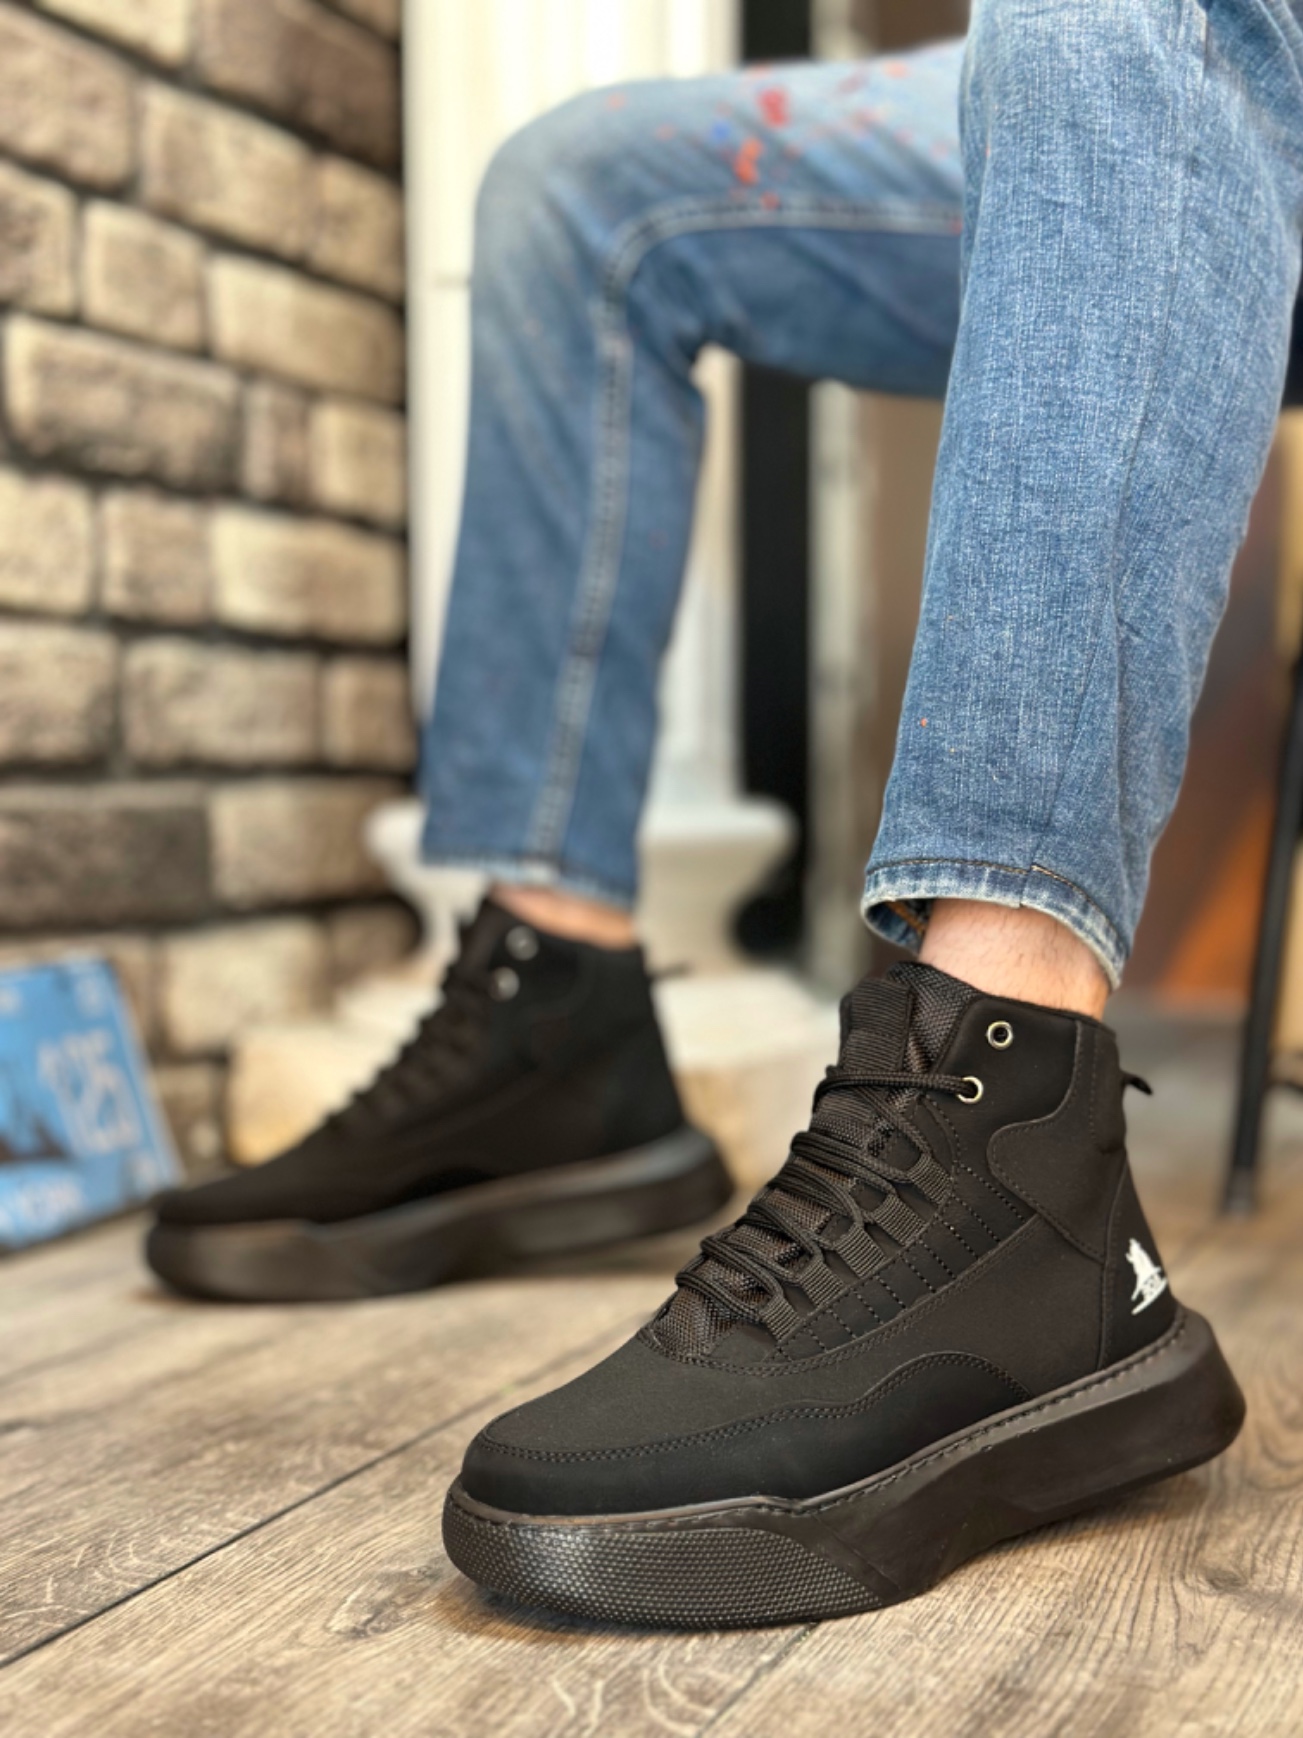 unisex sneakers on fbazaar 1-year warranty